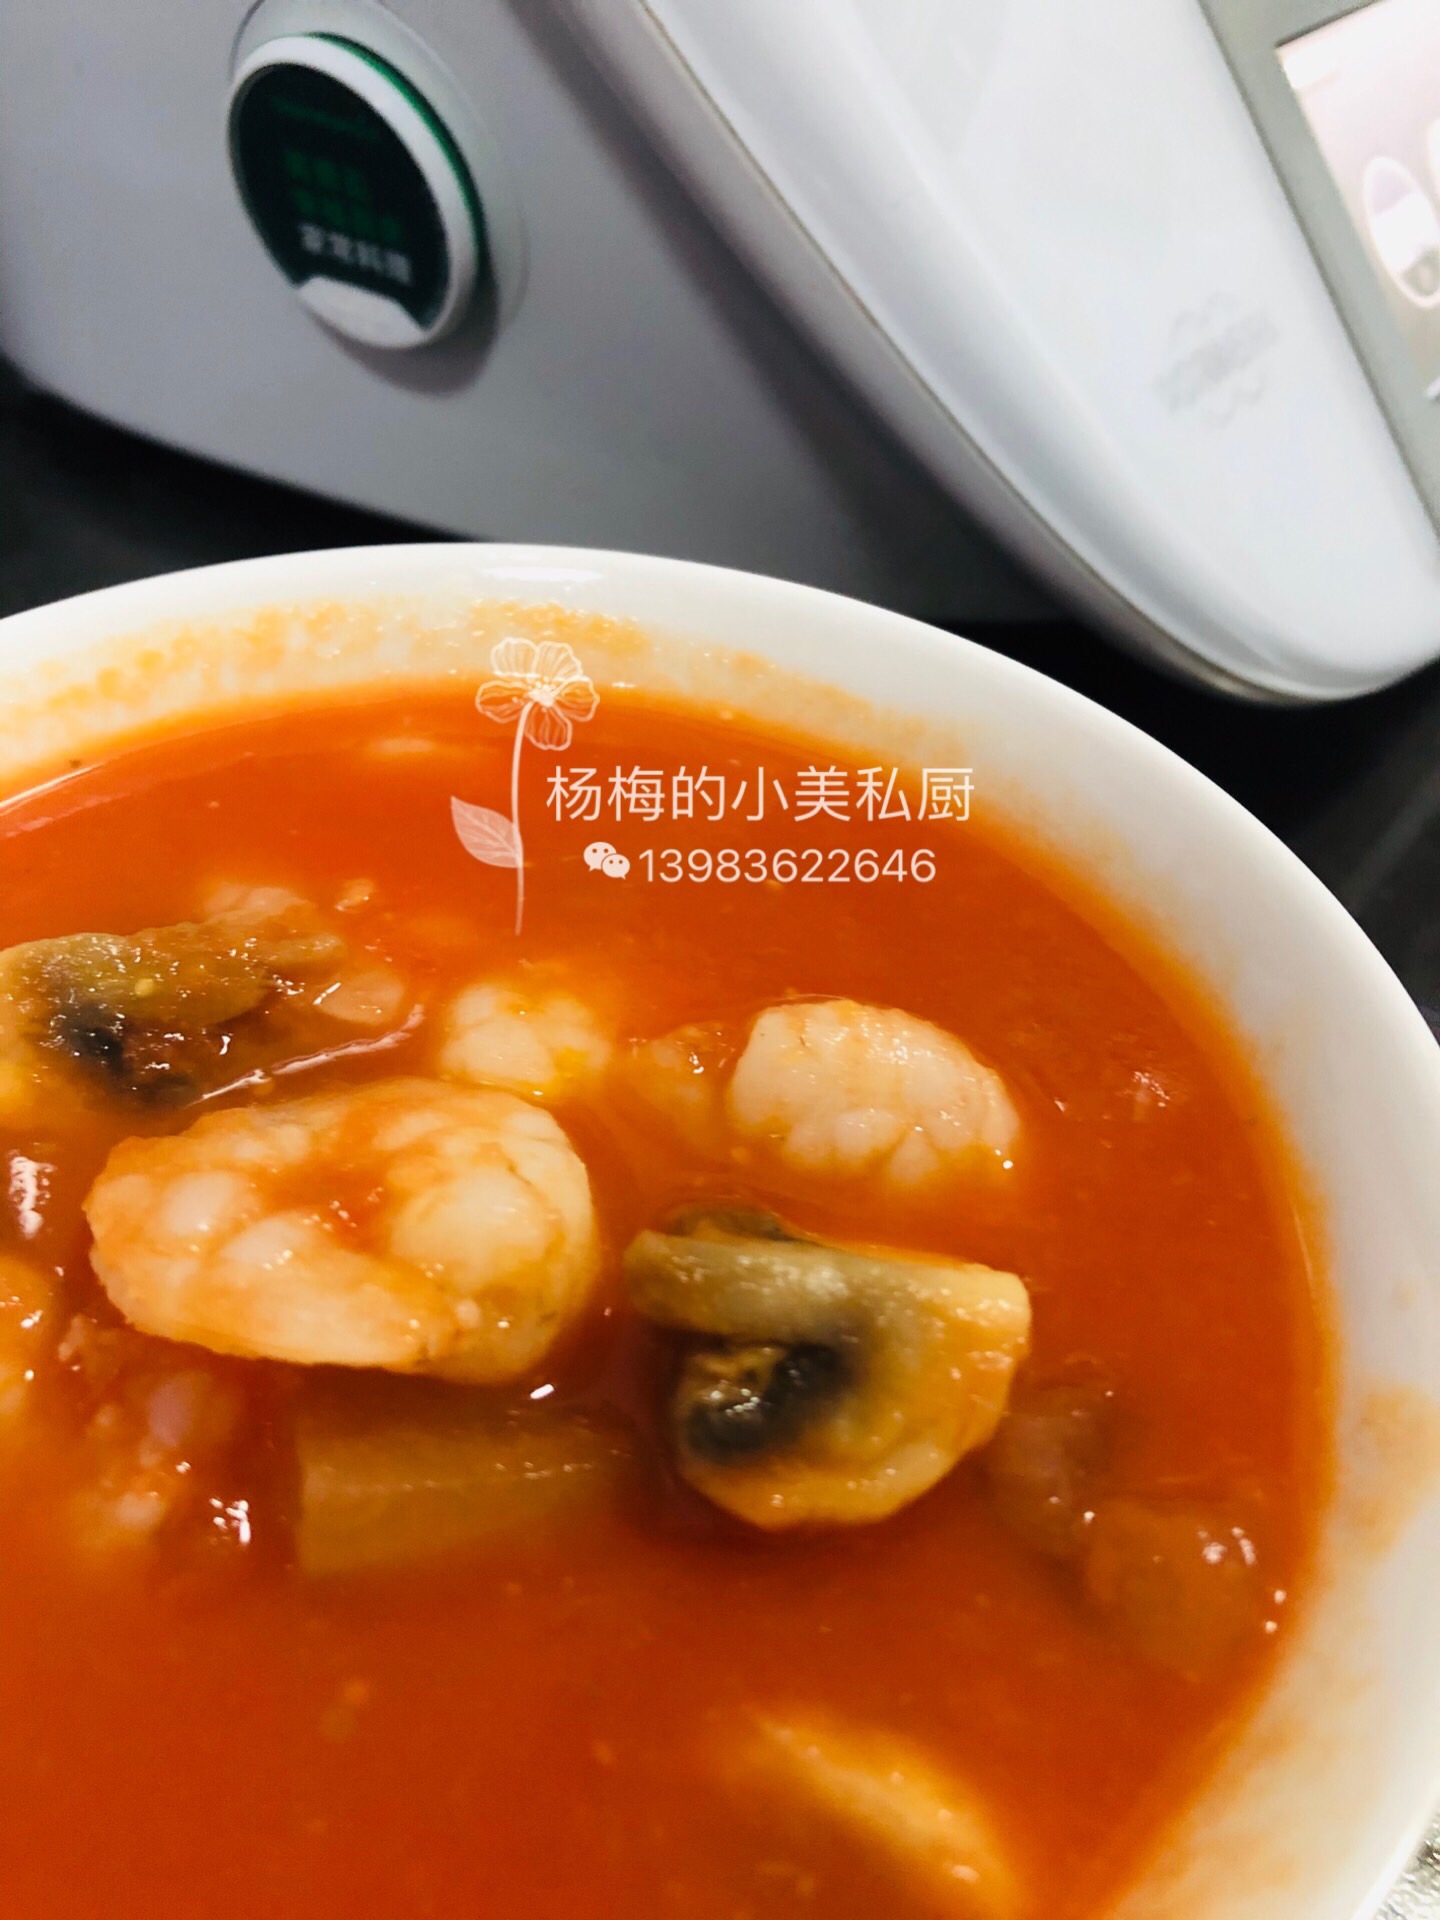 减肥食谱3 番茄蘑菇冬瓜虾仁浓汤的做法步骤图 杨梅的美善品私厨 下厨房